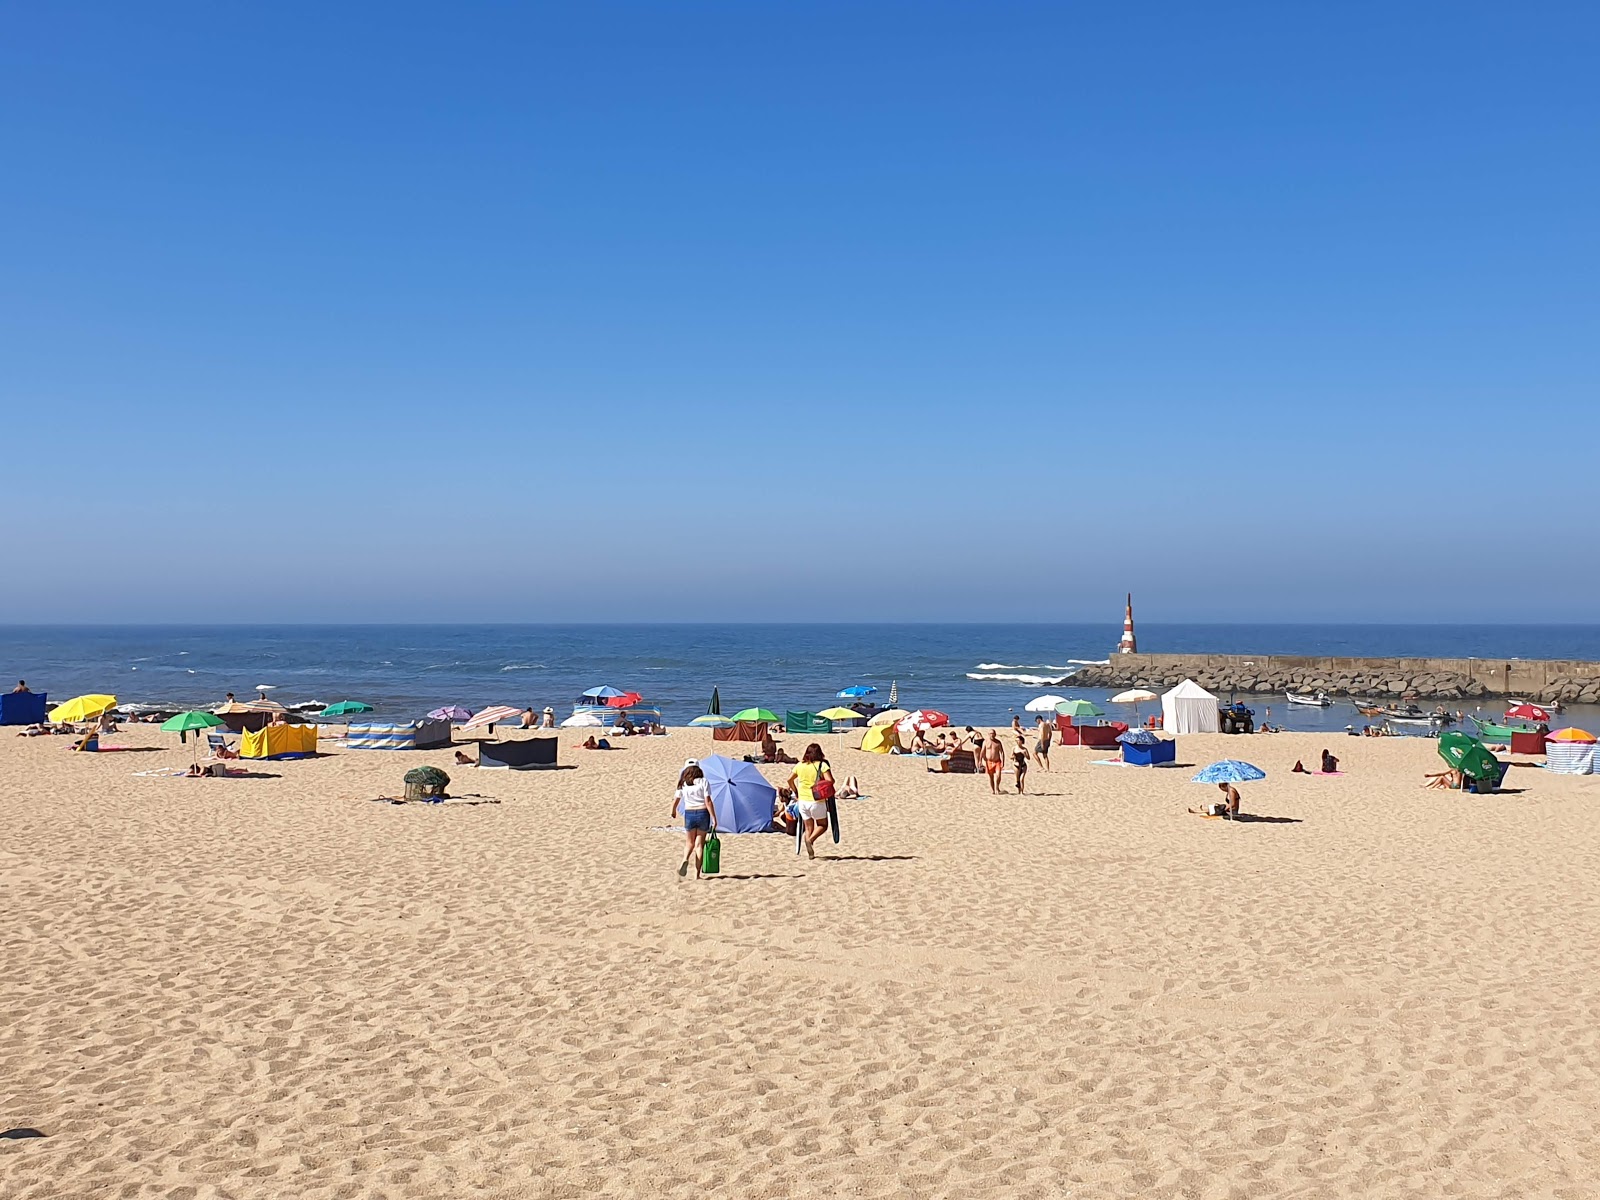 Praia da Aguda'in fotoğrafı - rahatlamayı sevenler arasında popüler bir yer